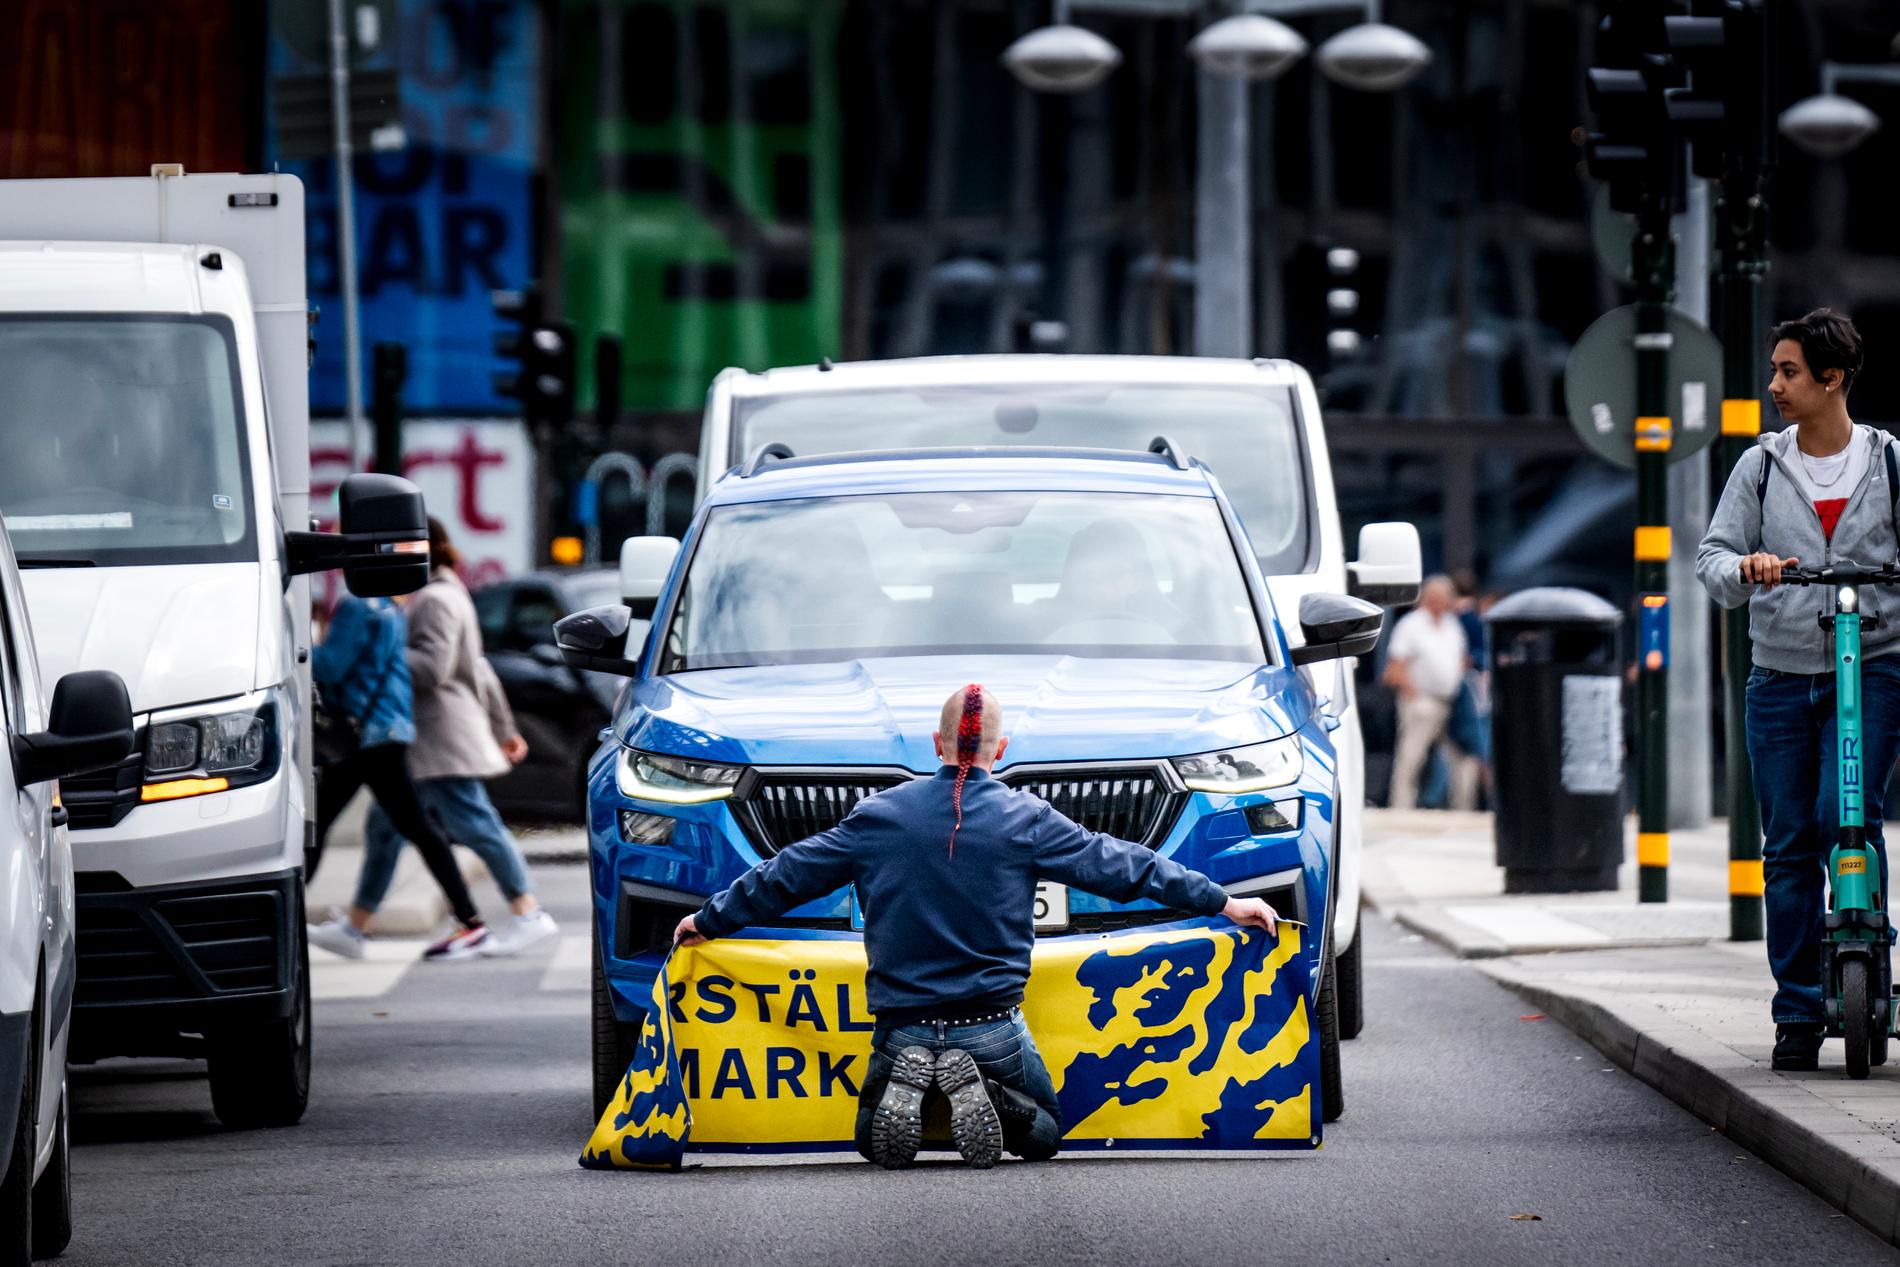 En klimataktivist med banderollen ”Återställ våtmarker” blockerar biltrafiken på Sveavägen vid Sergels torg i Stockholm den 7 juni 2022.